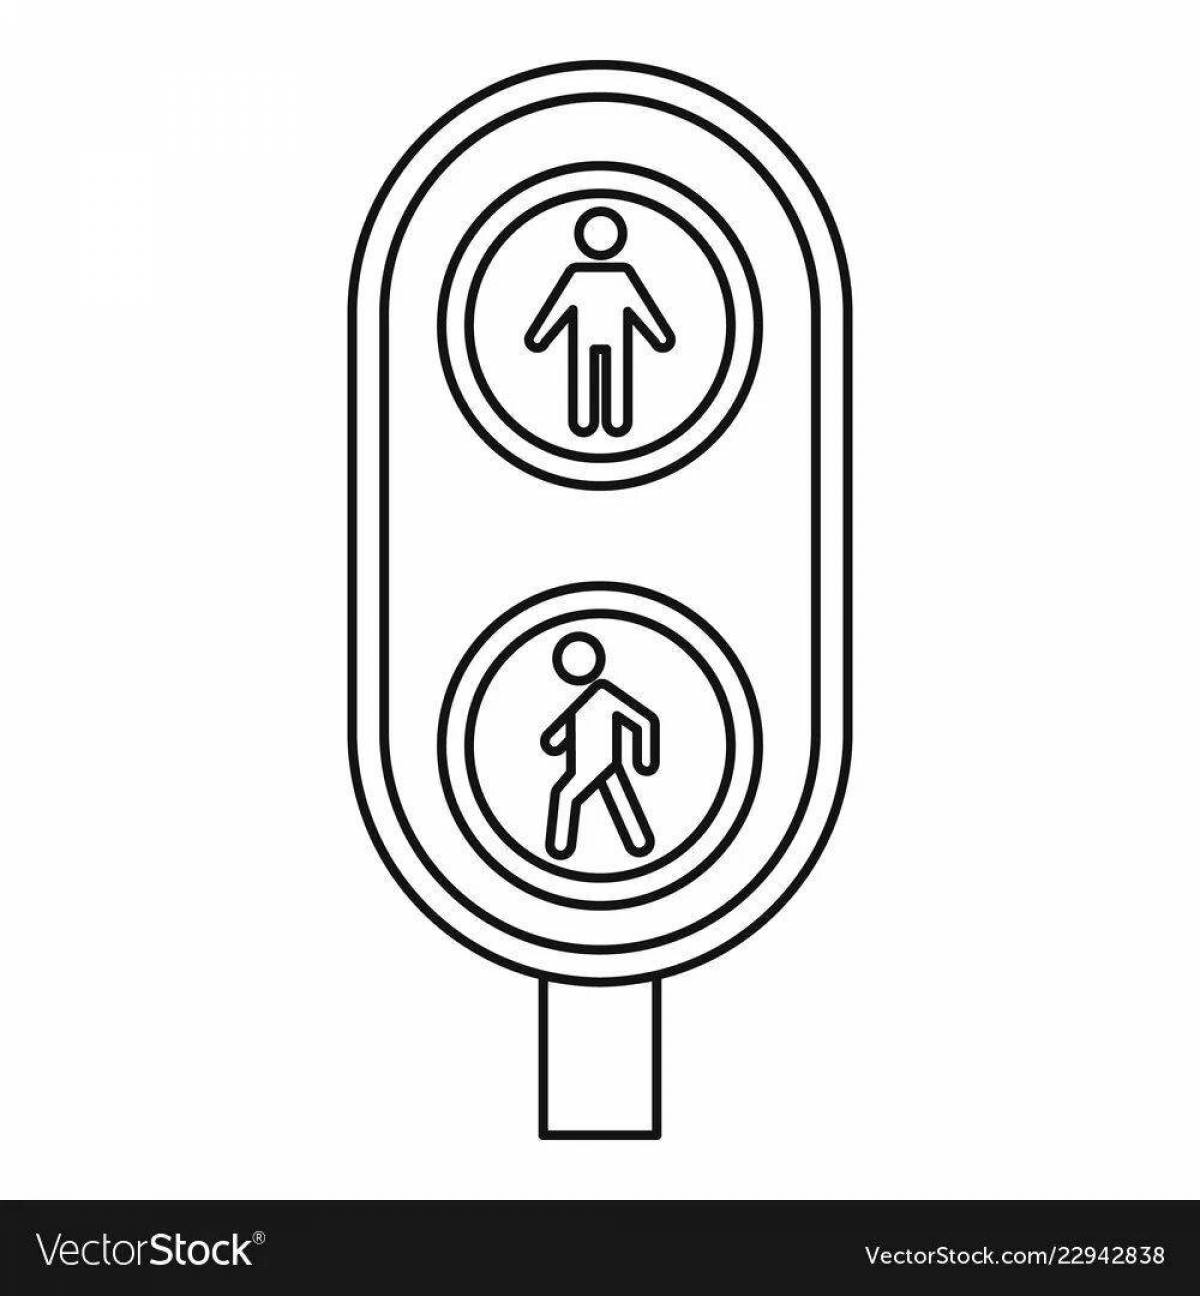 Величественный светофор для пешеходов